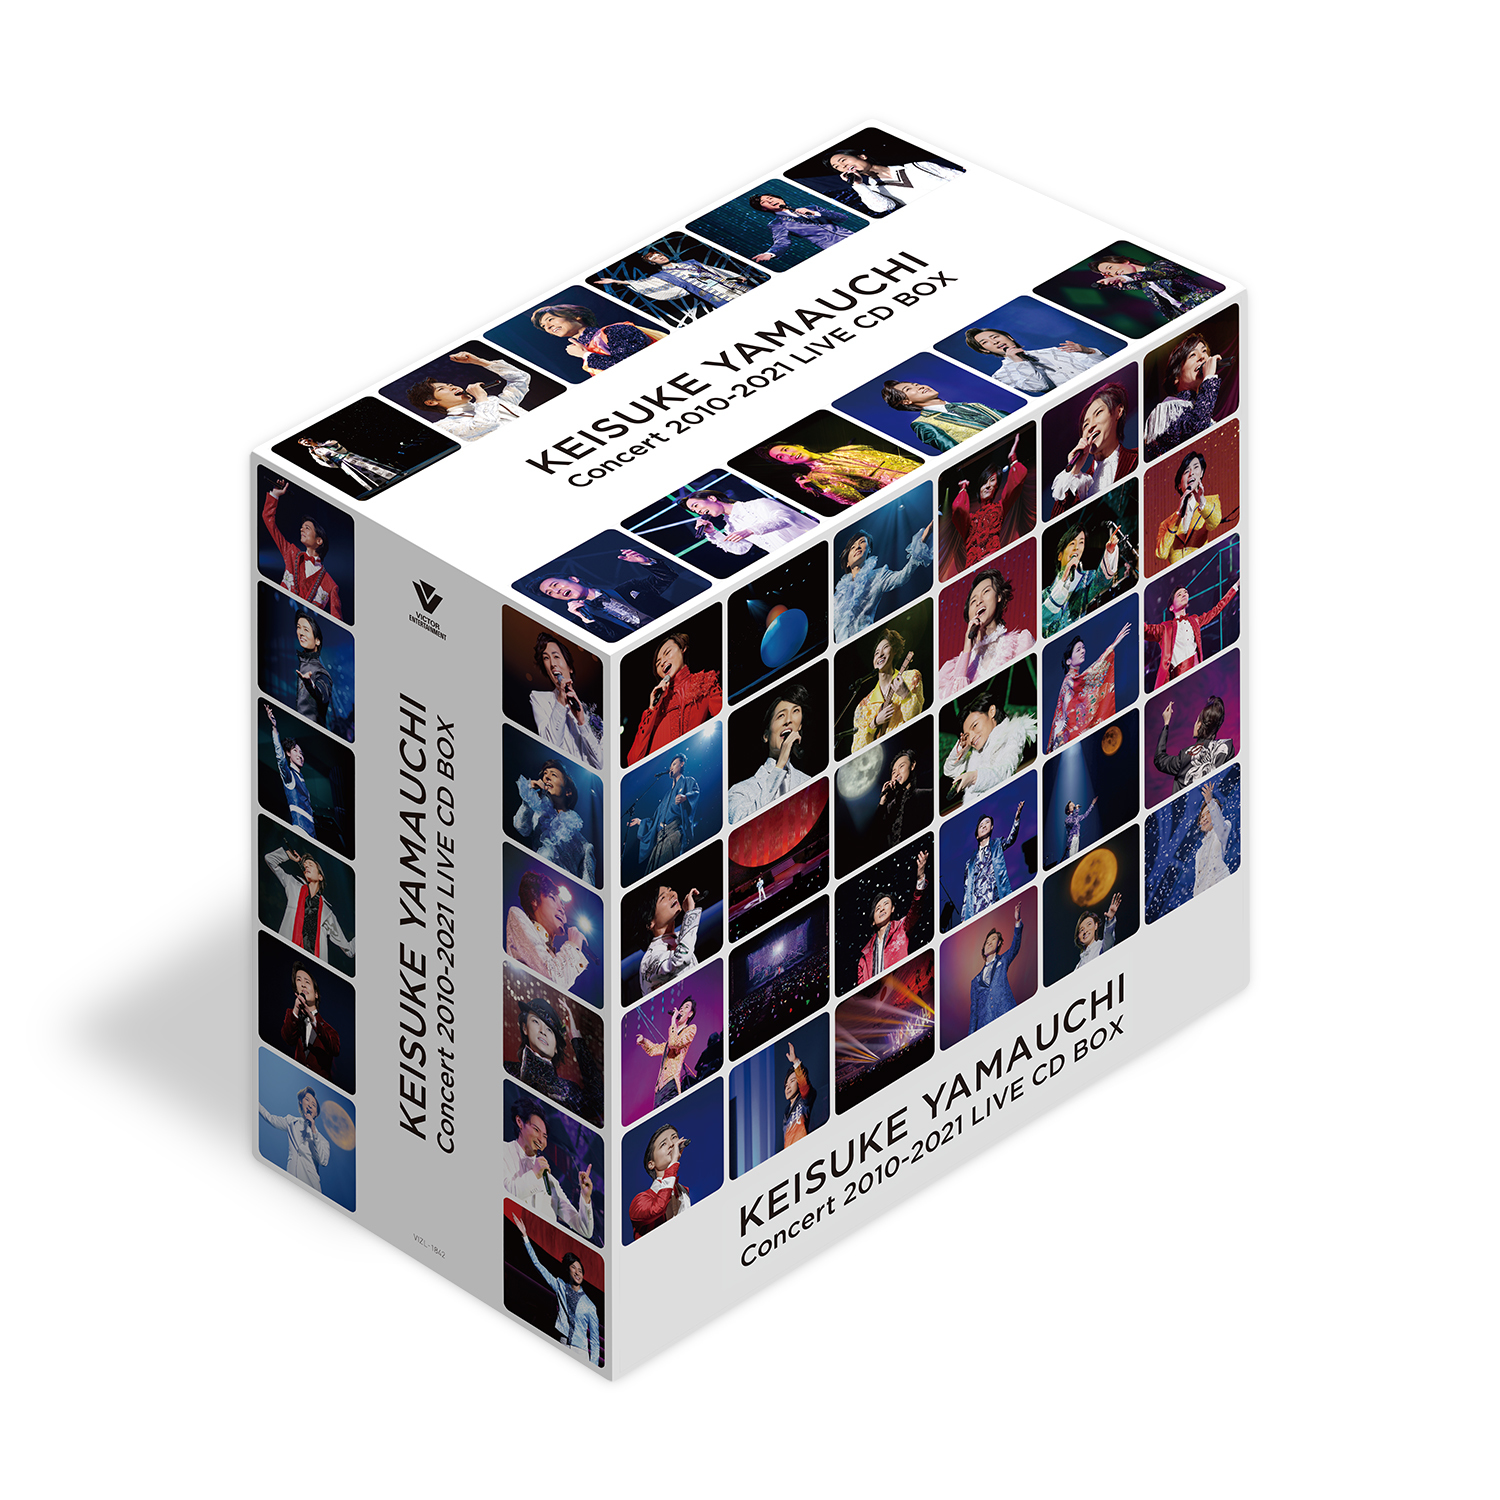 『山内惠介コンサート 2010-2021 LIVE CD BOX』イメージ画像